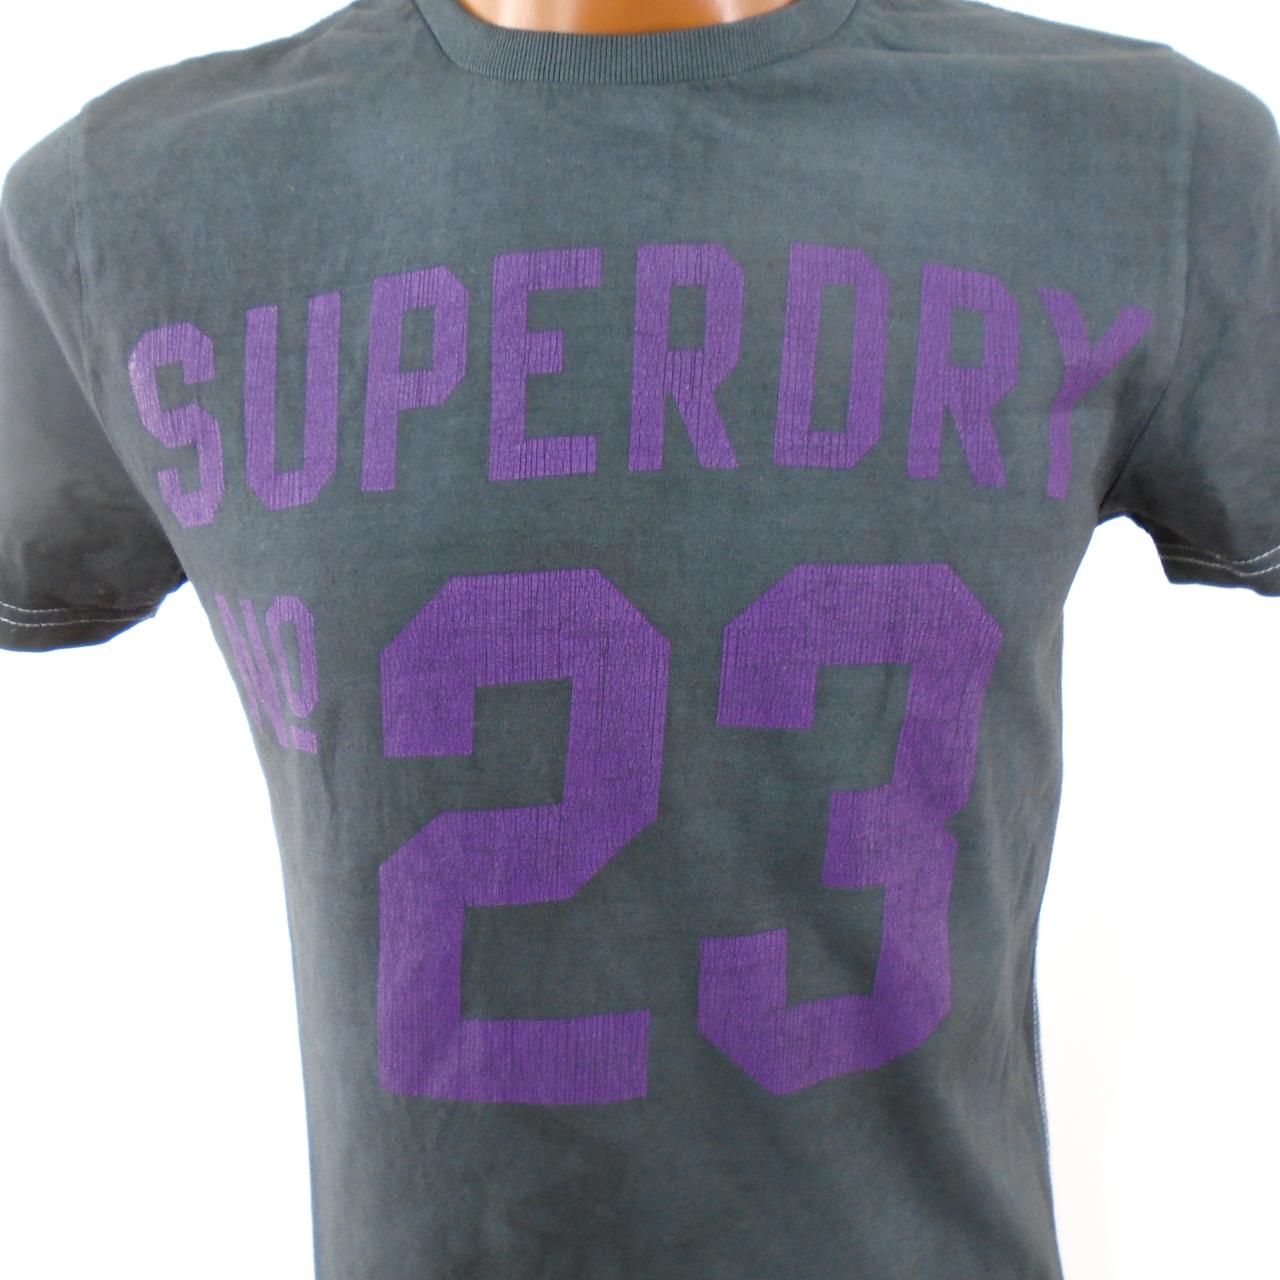 Herren-T-Shirt Superdry.  Schwarz.  M. gebraucht.  Zufriedenstellend